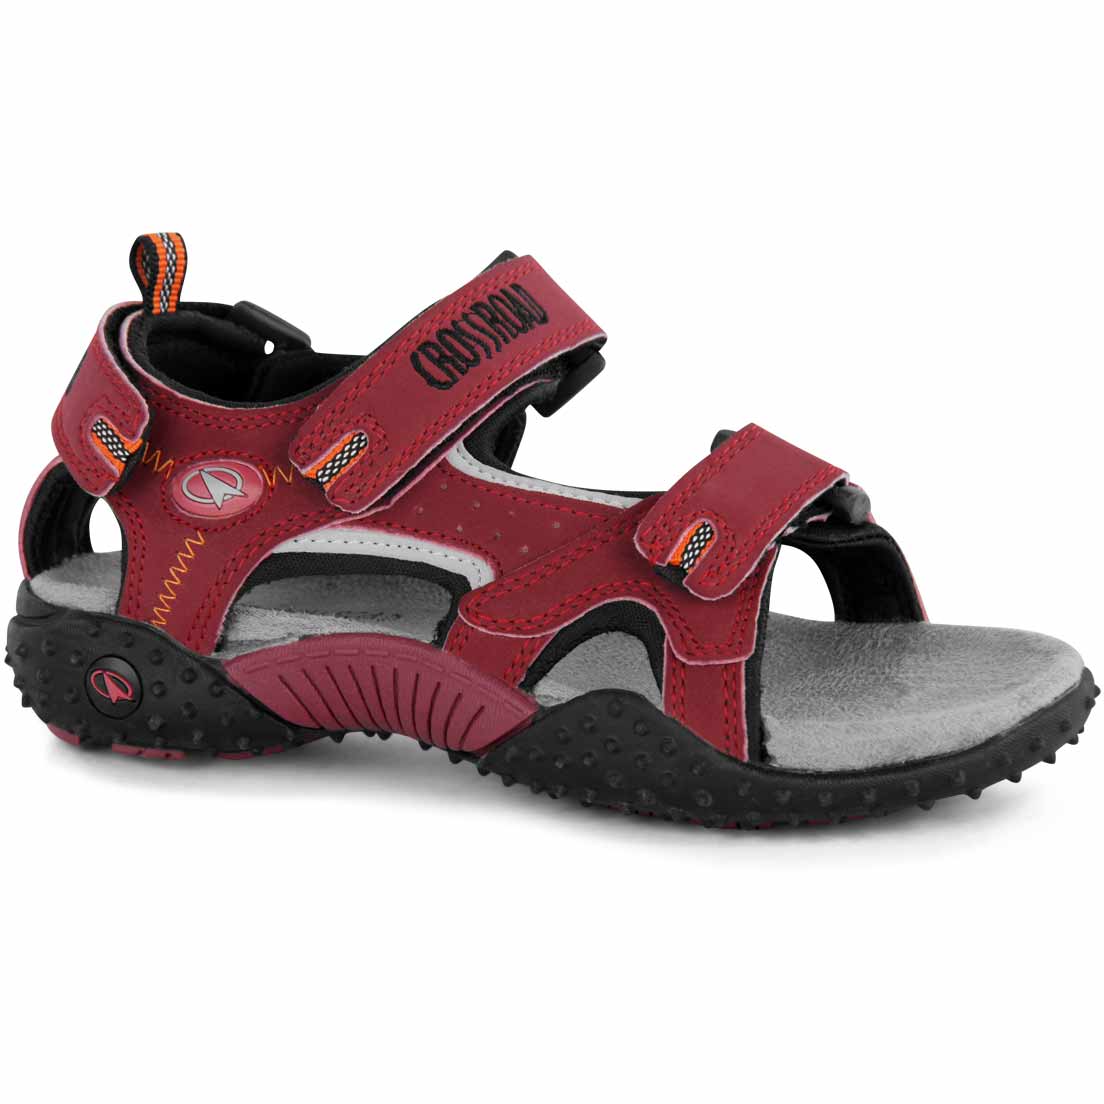 MONA - Children's sandals